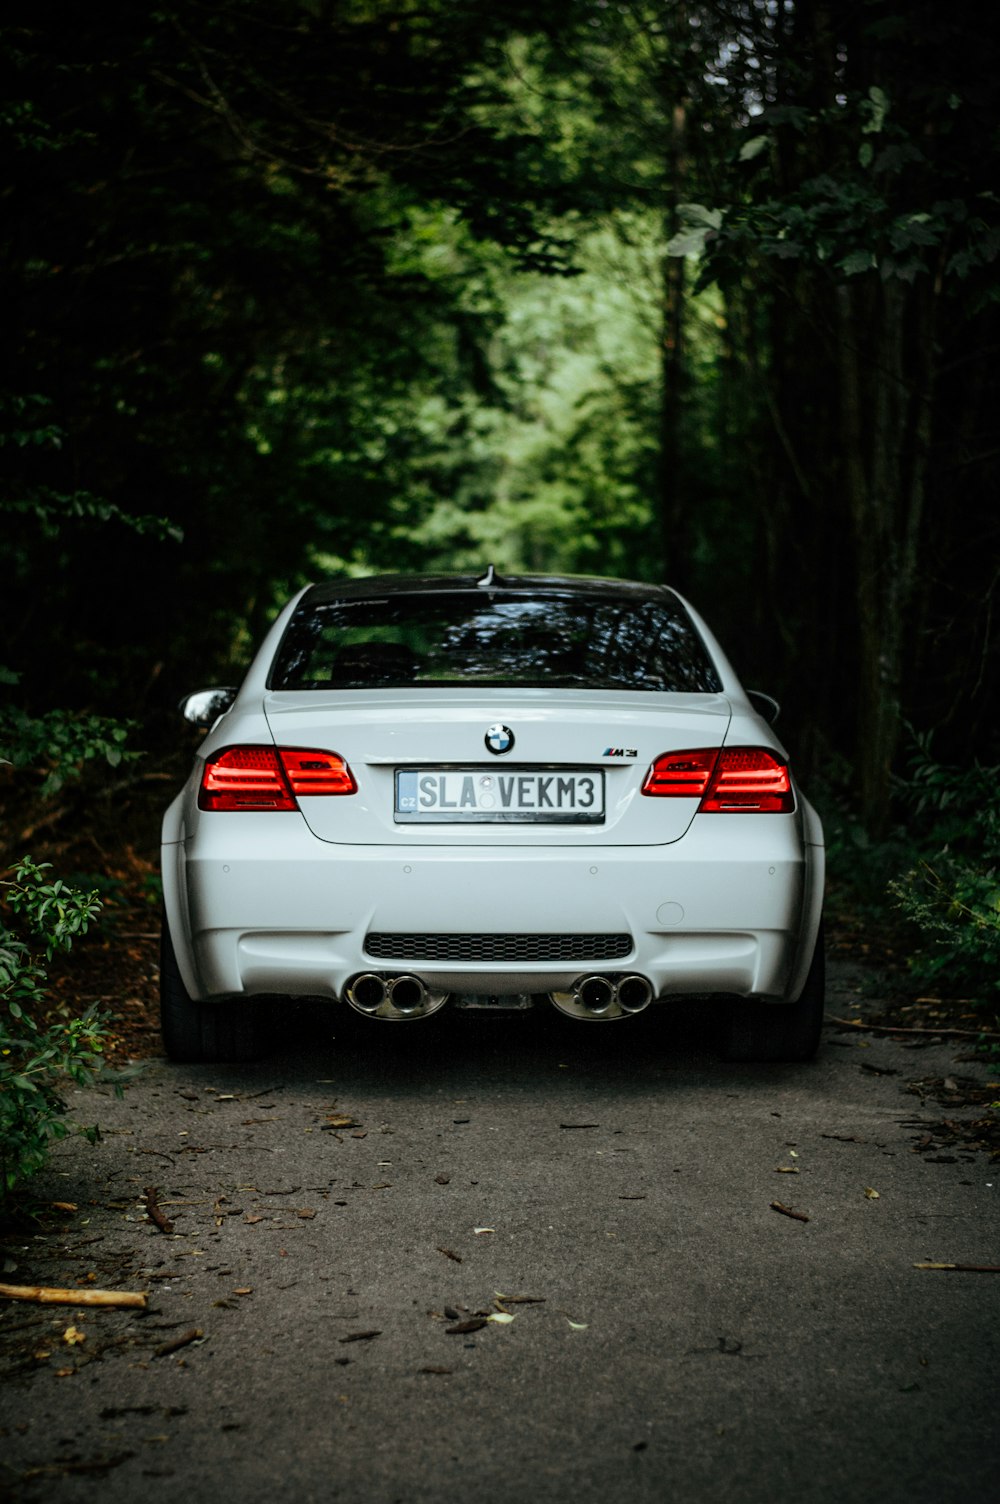 weißer BMW in der Nähe von Bäumen